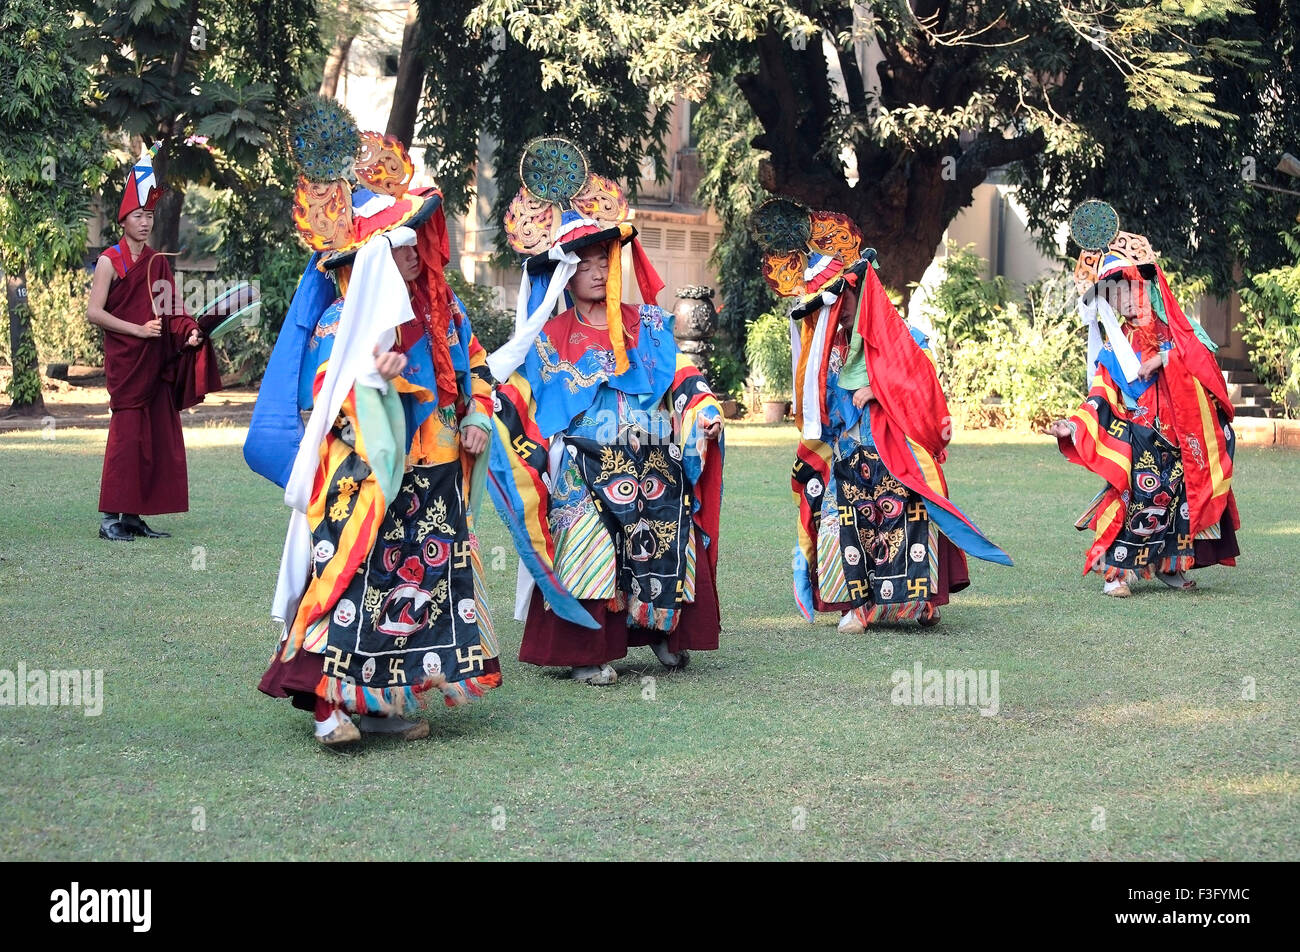 Danza tibetana, danza cham, monaci buddisti musicisti che suonano strumenti musicali, maschere ballerine, danza, India, Asia Foto Stock